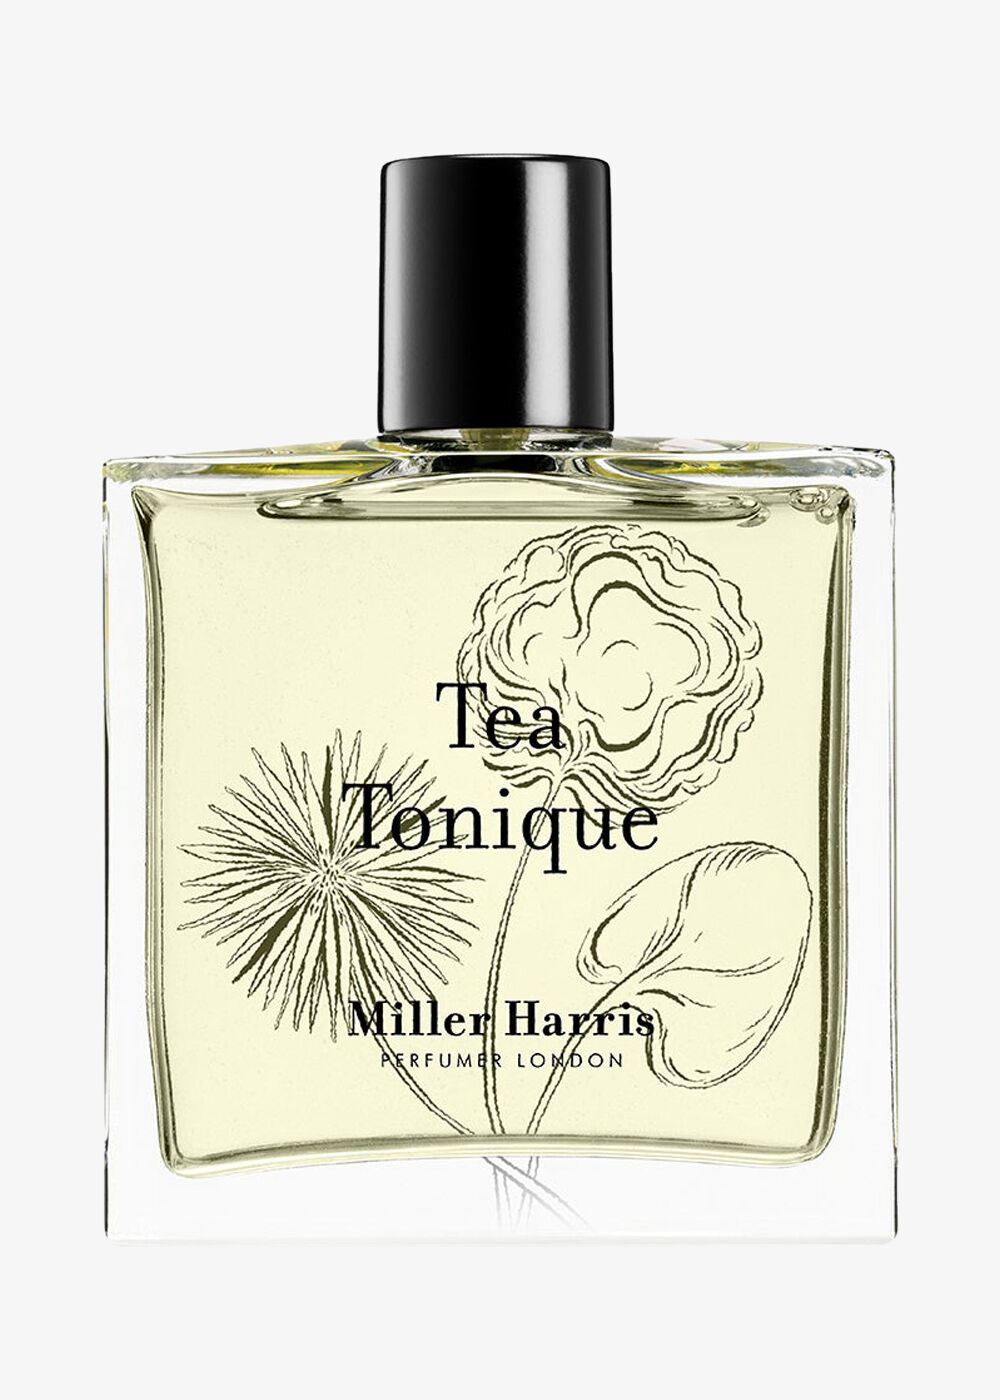 Parfum «Tea Tonique»